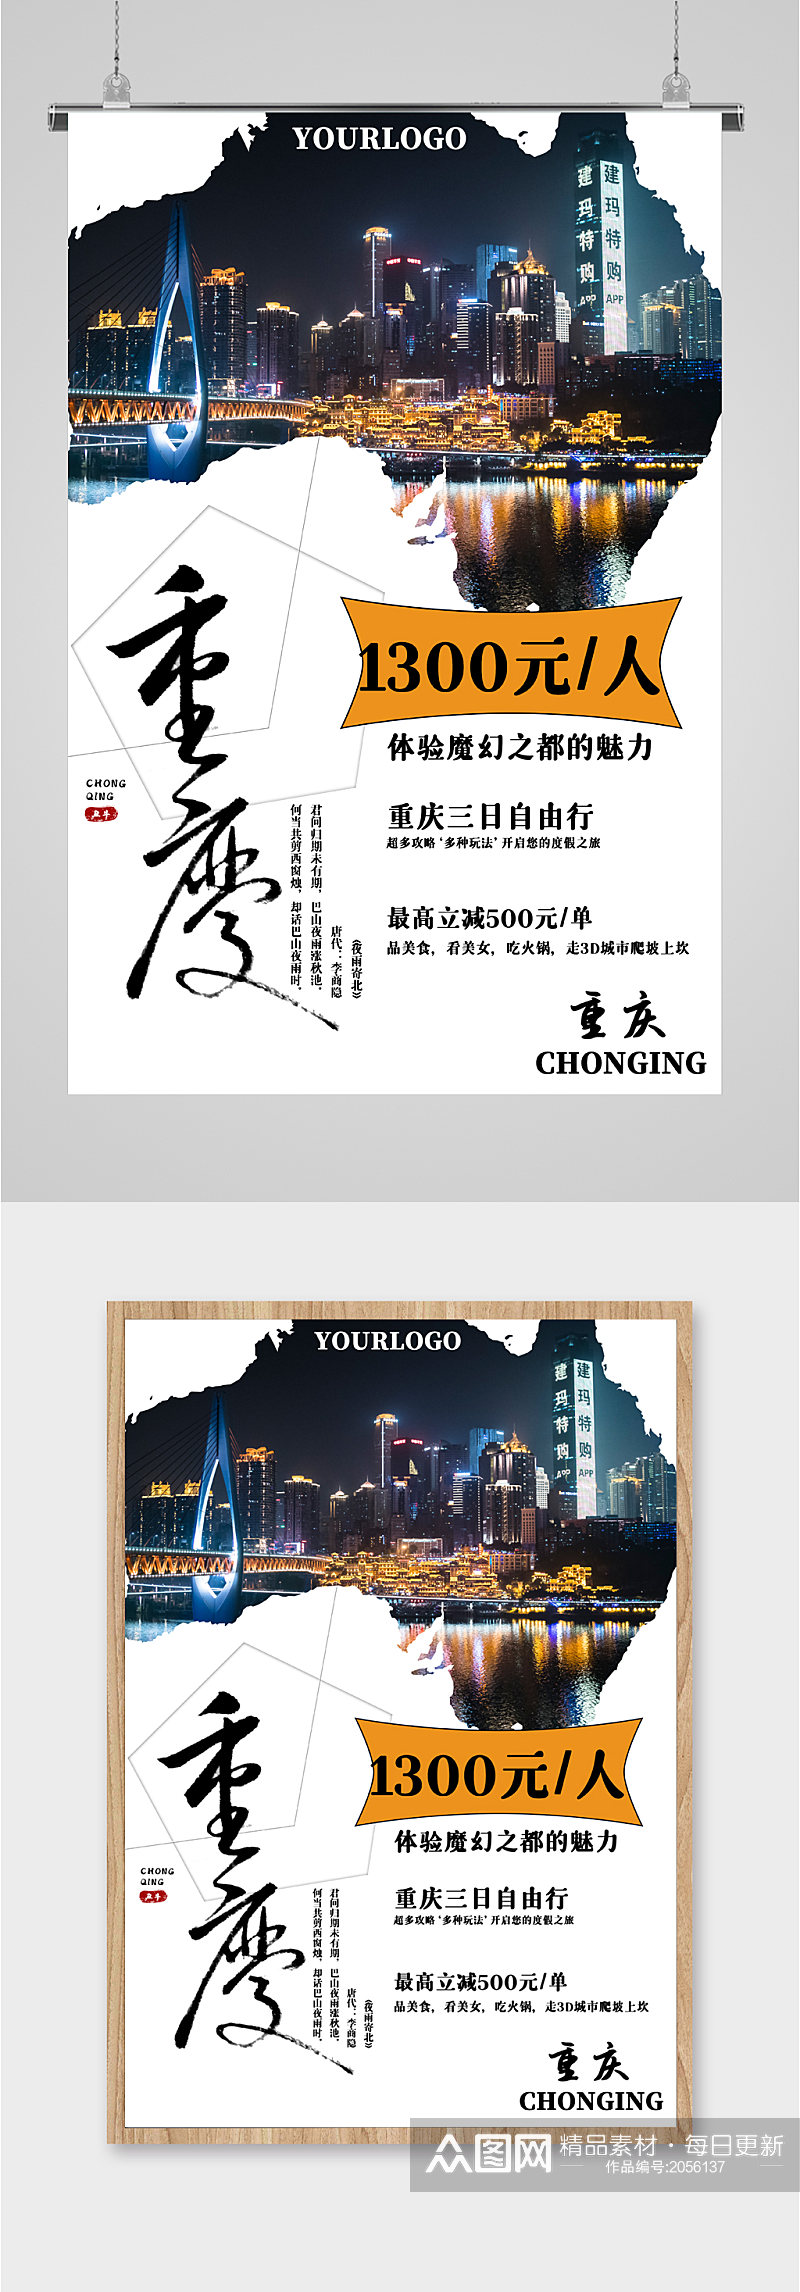 重庆三日游旅游海报素材